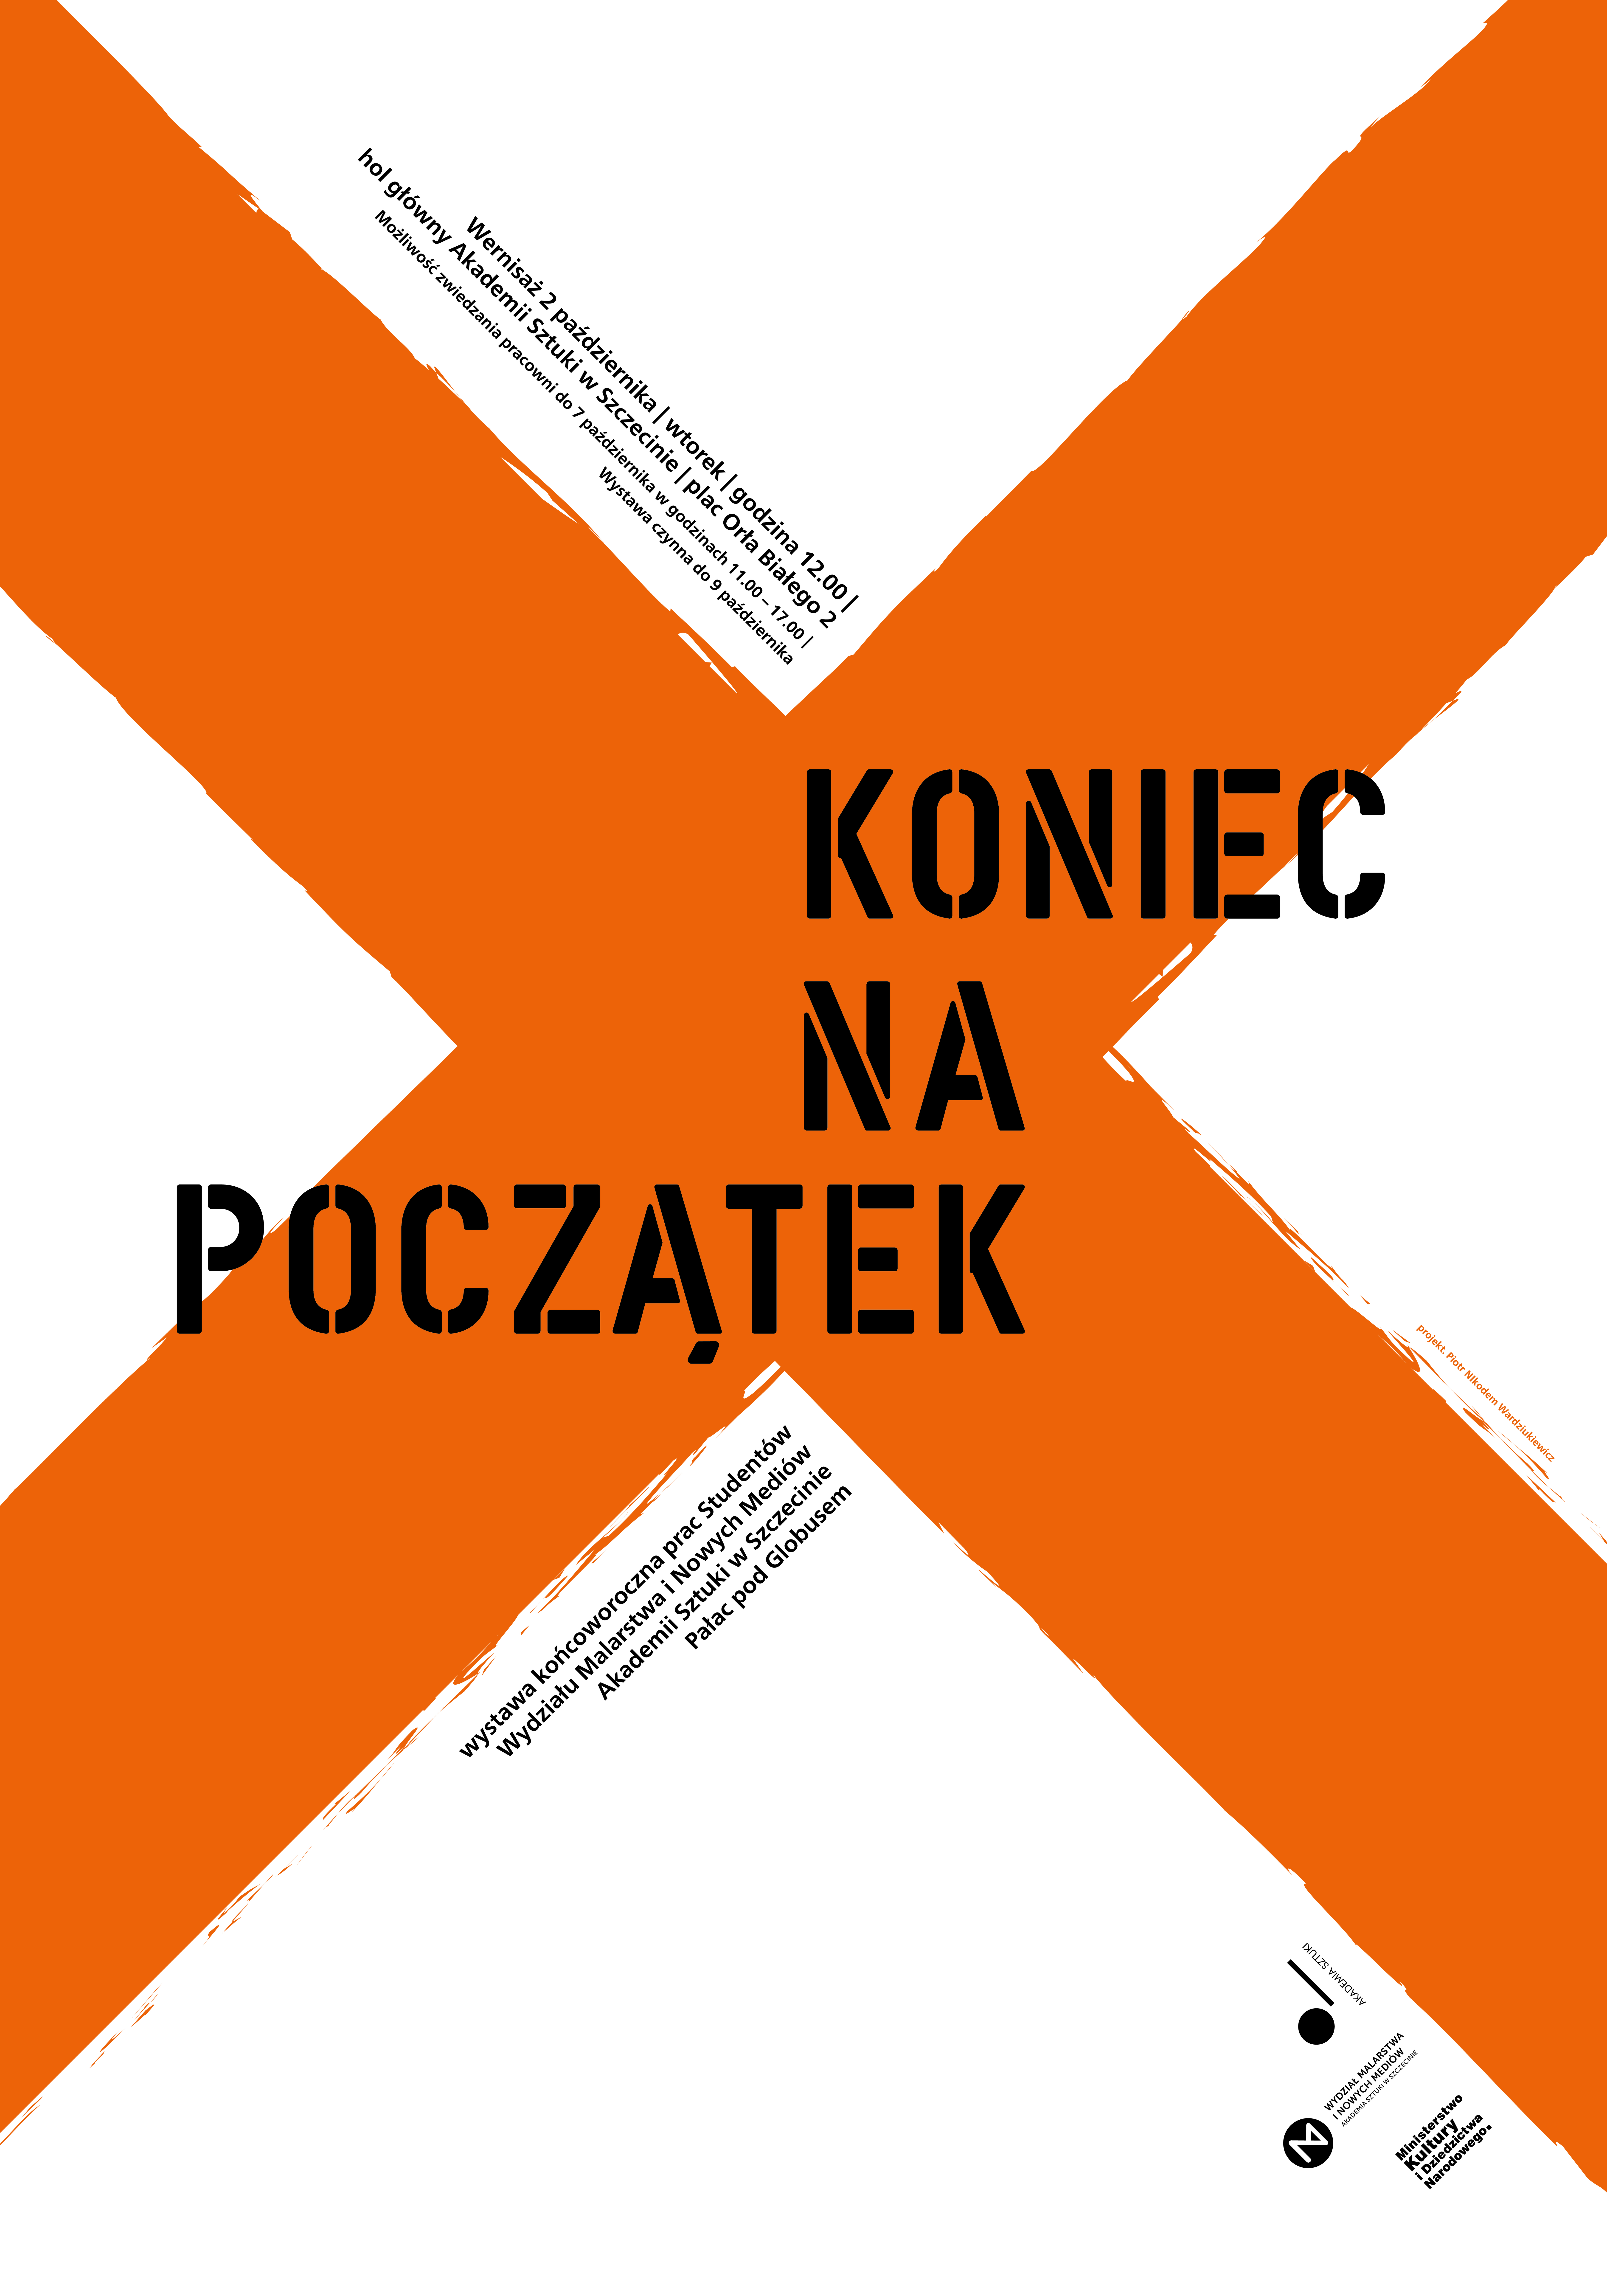 Koniec na Początek, Akademia Sztuki w Szczecinie, 2018